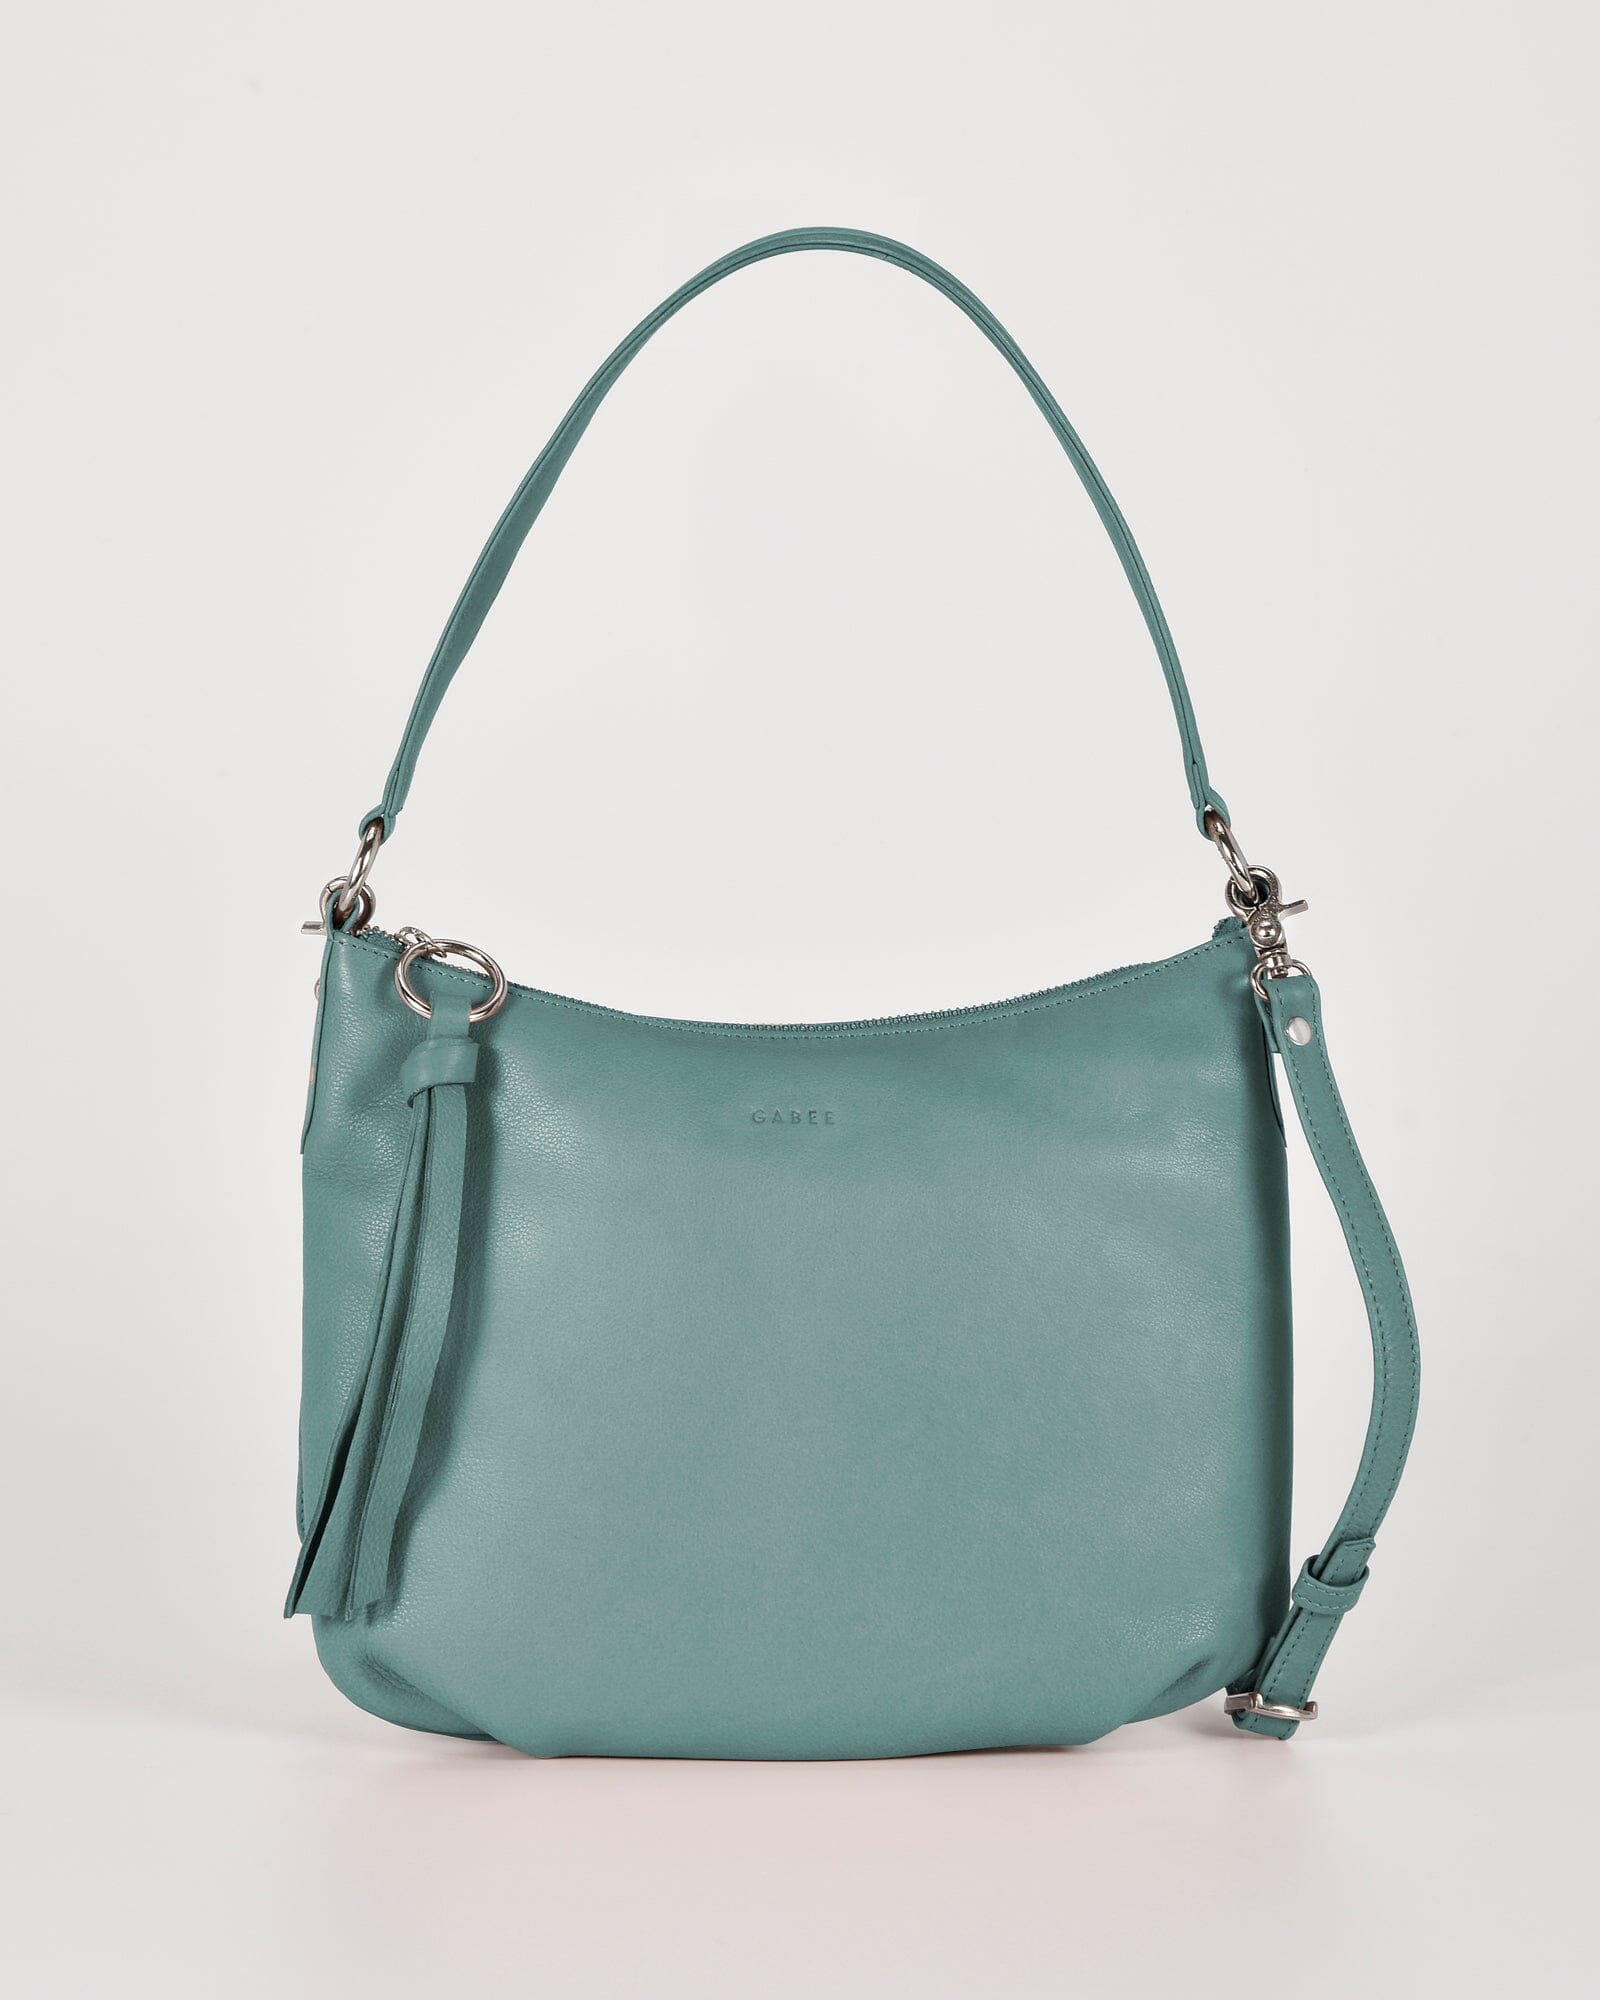 Buy Leather Bags Online Australia | KINNON